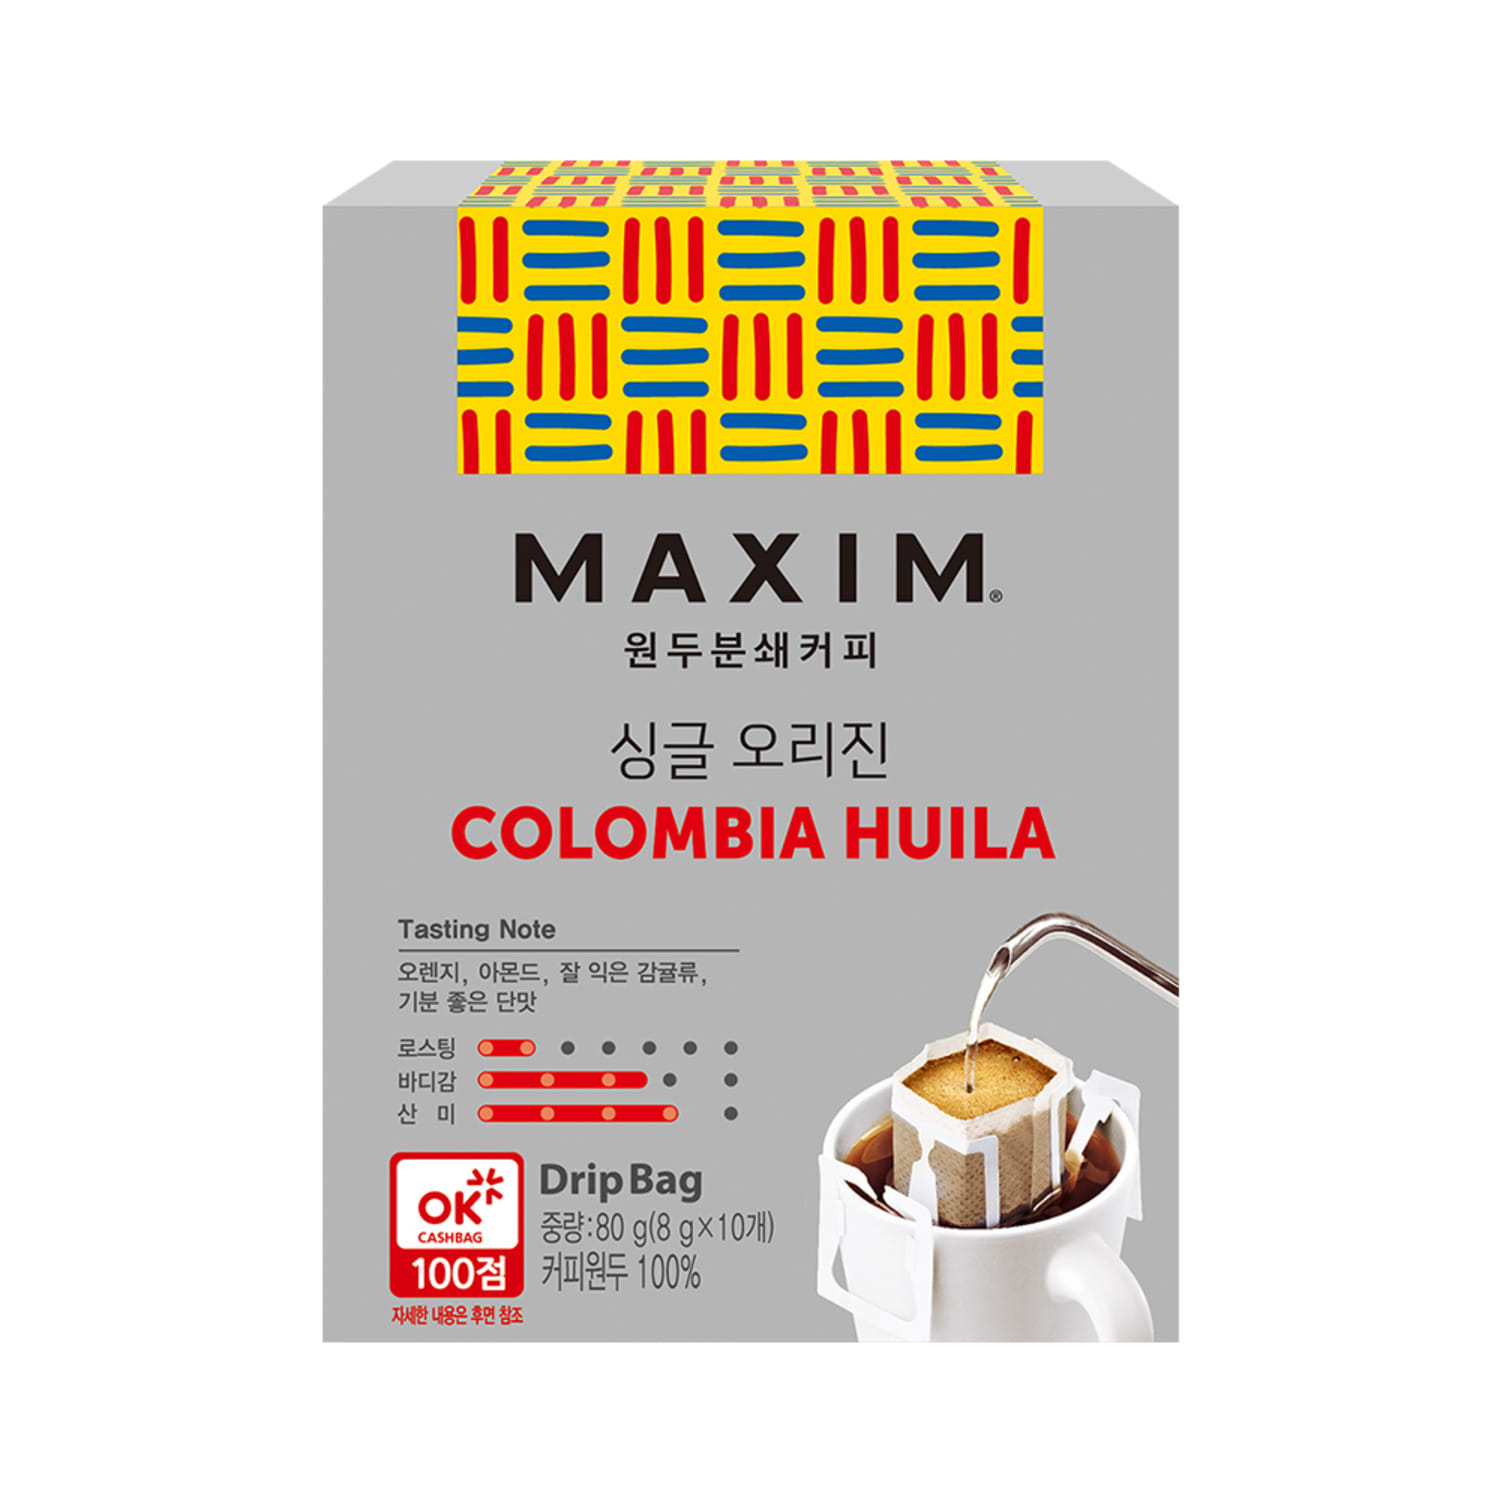 맥심 싱글 오리진 드립백 핸드드립 커피 10T / 콜롬비아 우일라 에티오피아 시다모 브라질 산토스